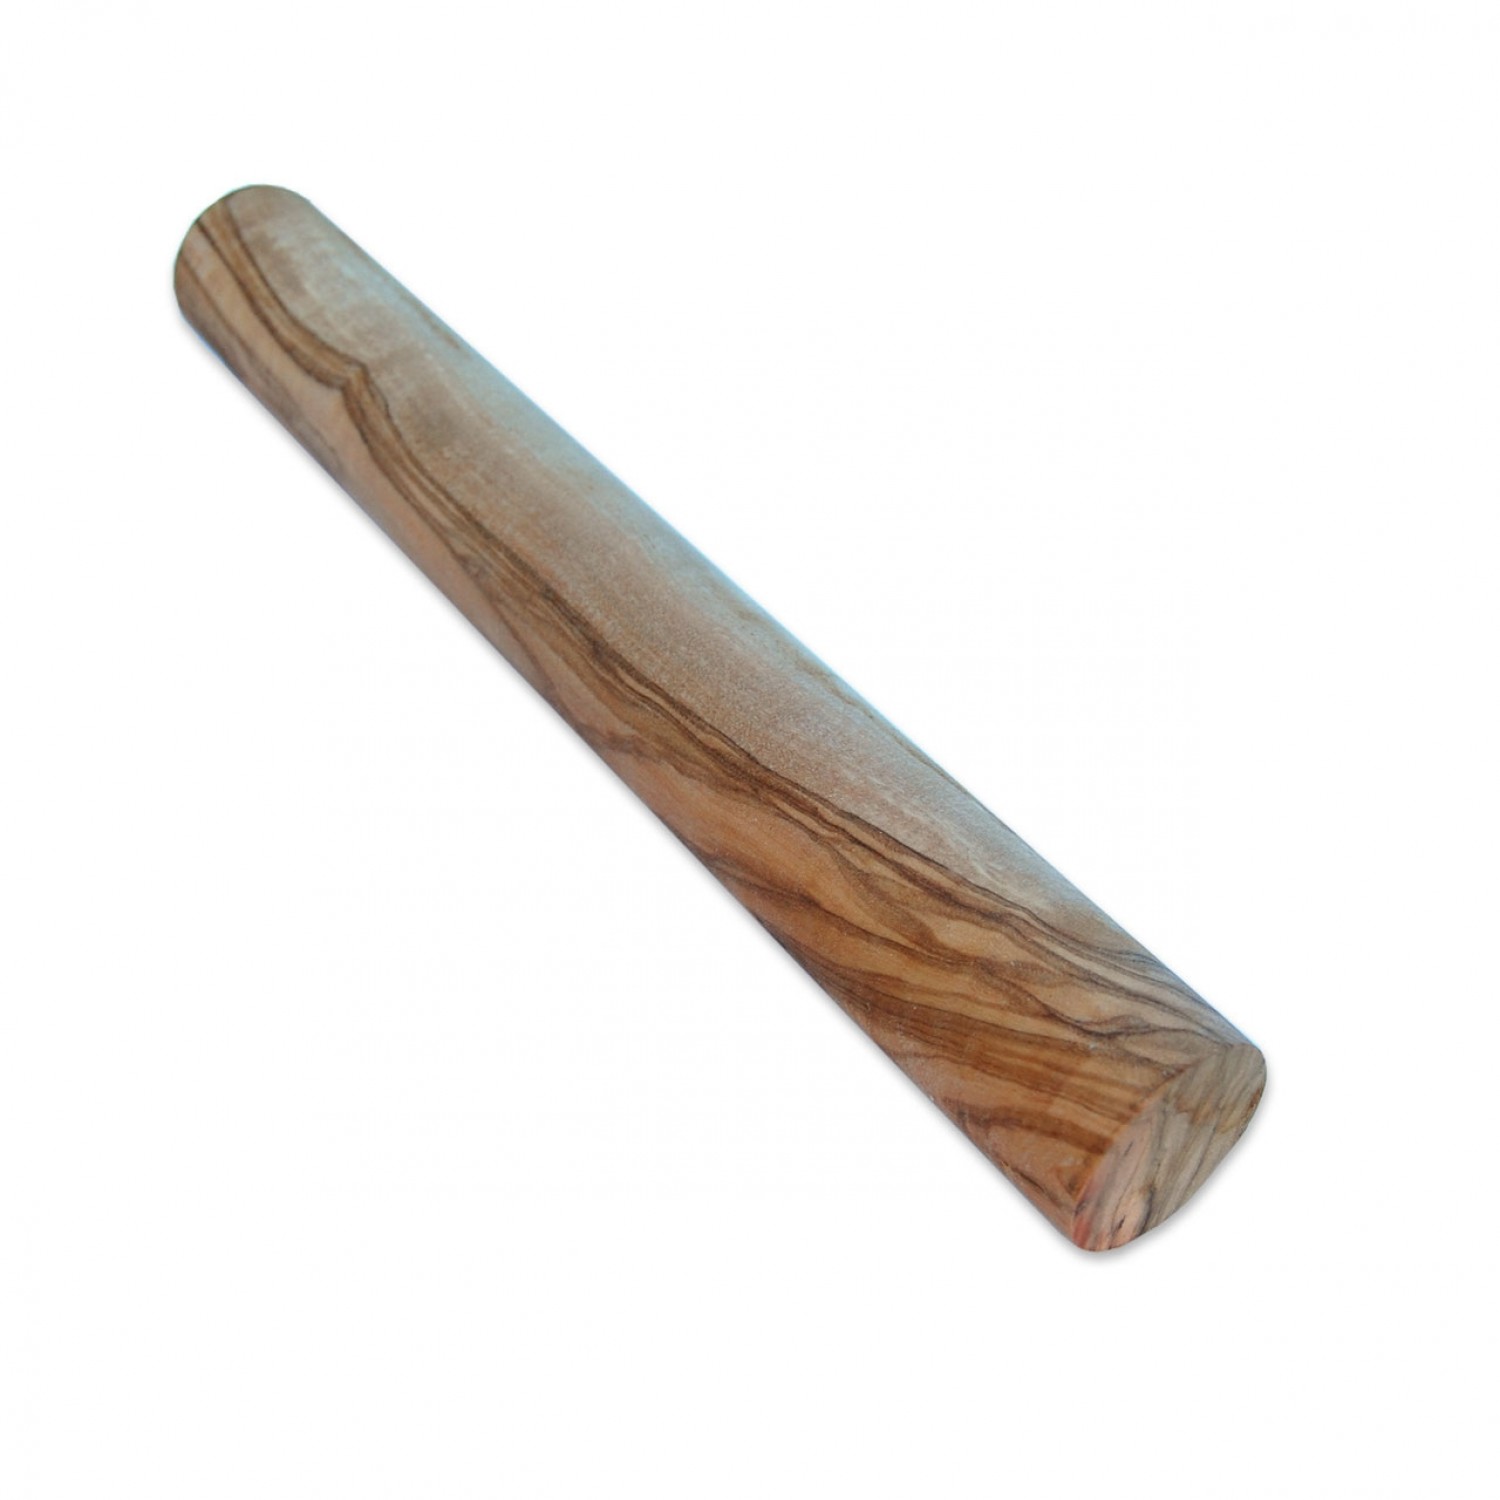 Raw Olive Wood round timber L 30 cm x Ø 3 cm » D.O.M.